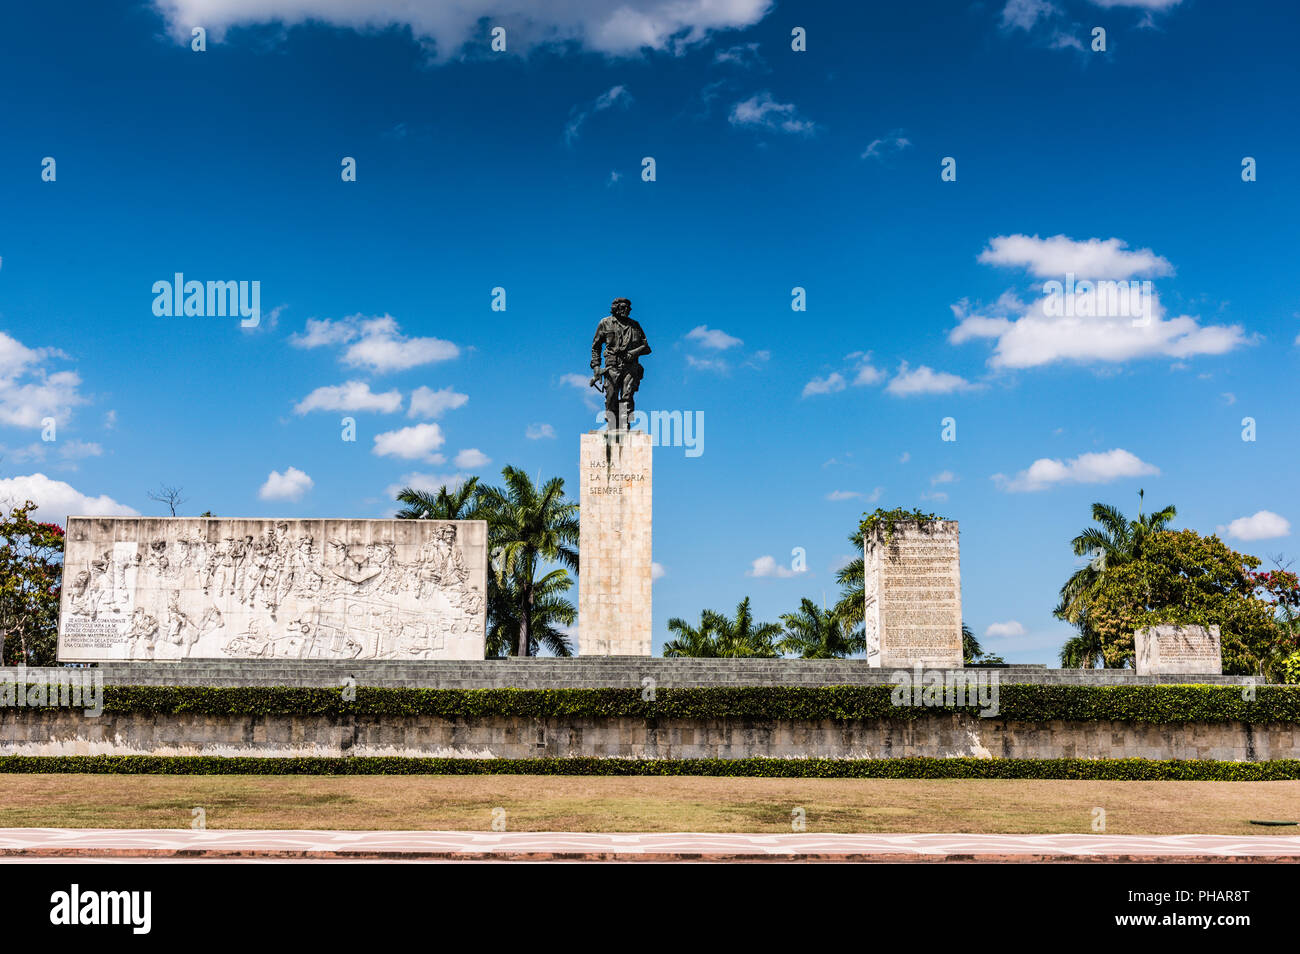 Santa Clara, Kuba/16. März 2016: Bronzestatue des revolutionären militärischen Führer Che Guevara. Stockfoto